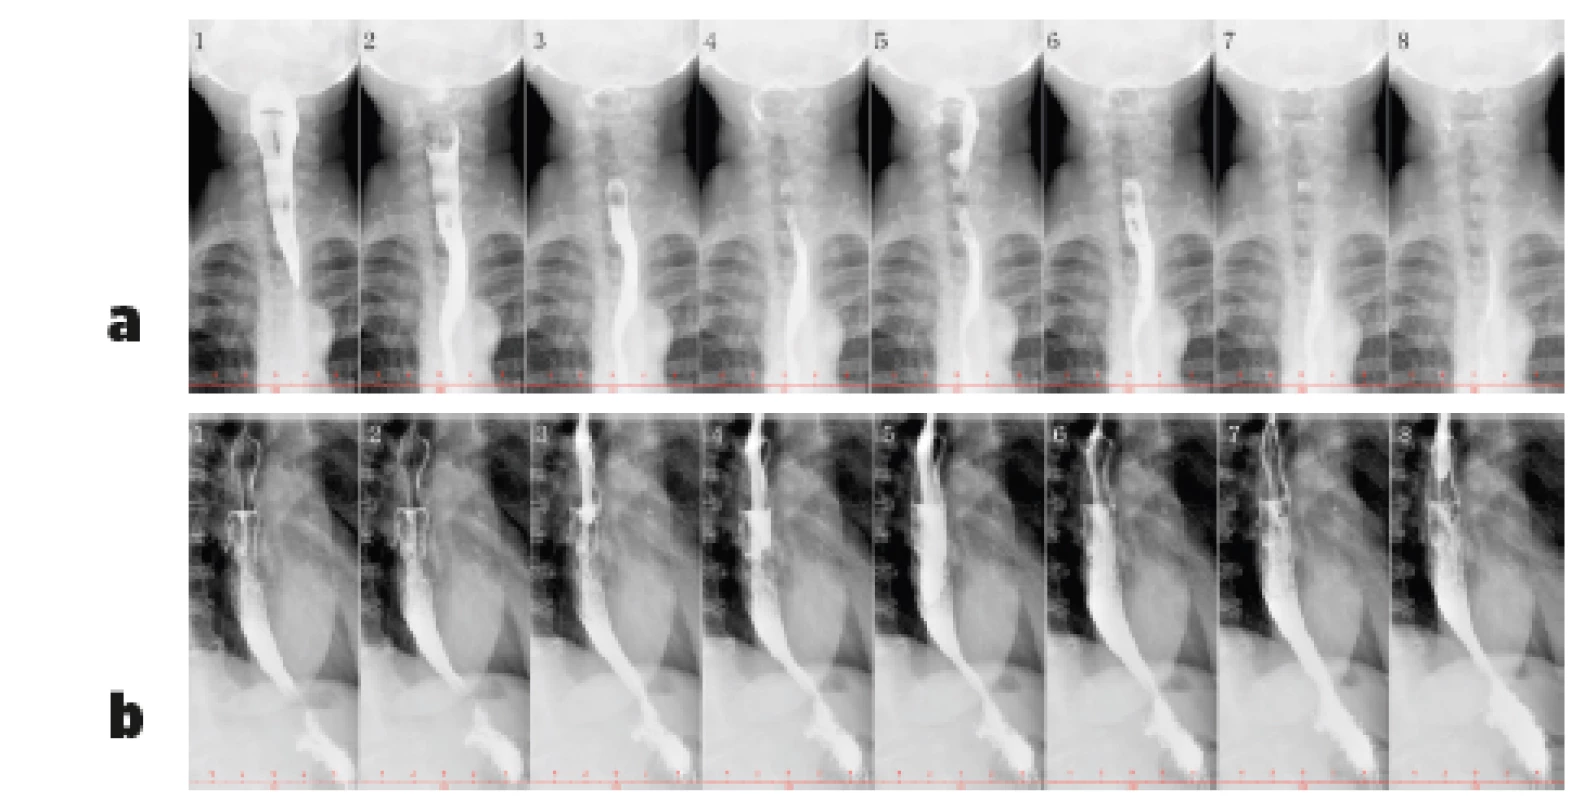 Vyšetření polykacího aktu pomocí RTG jícnu
s kontrastem – bariová suspenze (200 ml Micropaque) u pacientky
s dysmotilitou jícnu při SSc (z archivu Revmatologického ústavu)
Je patrný volně výbavný polykací akt. Horní část jícnu (obr. 3a)
není rozšířená a pasáž je volná, na snímku 1 a 2 je dobře patrná
projekce osteofytů krční páteře do zadní stěny hypofaryngu.
Pod obloukem aorty (obr. 3b) se jícen hypotonicky rozšiřuje
a peristaltika je vymizelá, jícen se konicky zužuje k hiátu –
kontrastní látka zde stagnuje a žaludek se poté plní užším kanálem.<br>
3a Předozadní projekce, horní část jícnu<br>
3b Boční projekce, dolní část jícnu (včetně části pod
aortálním obloukem)